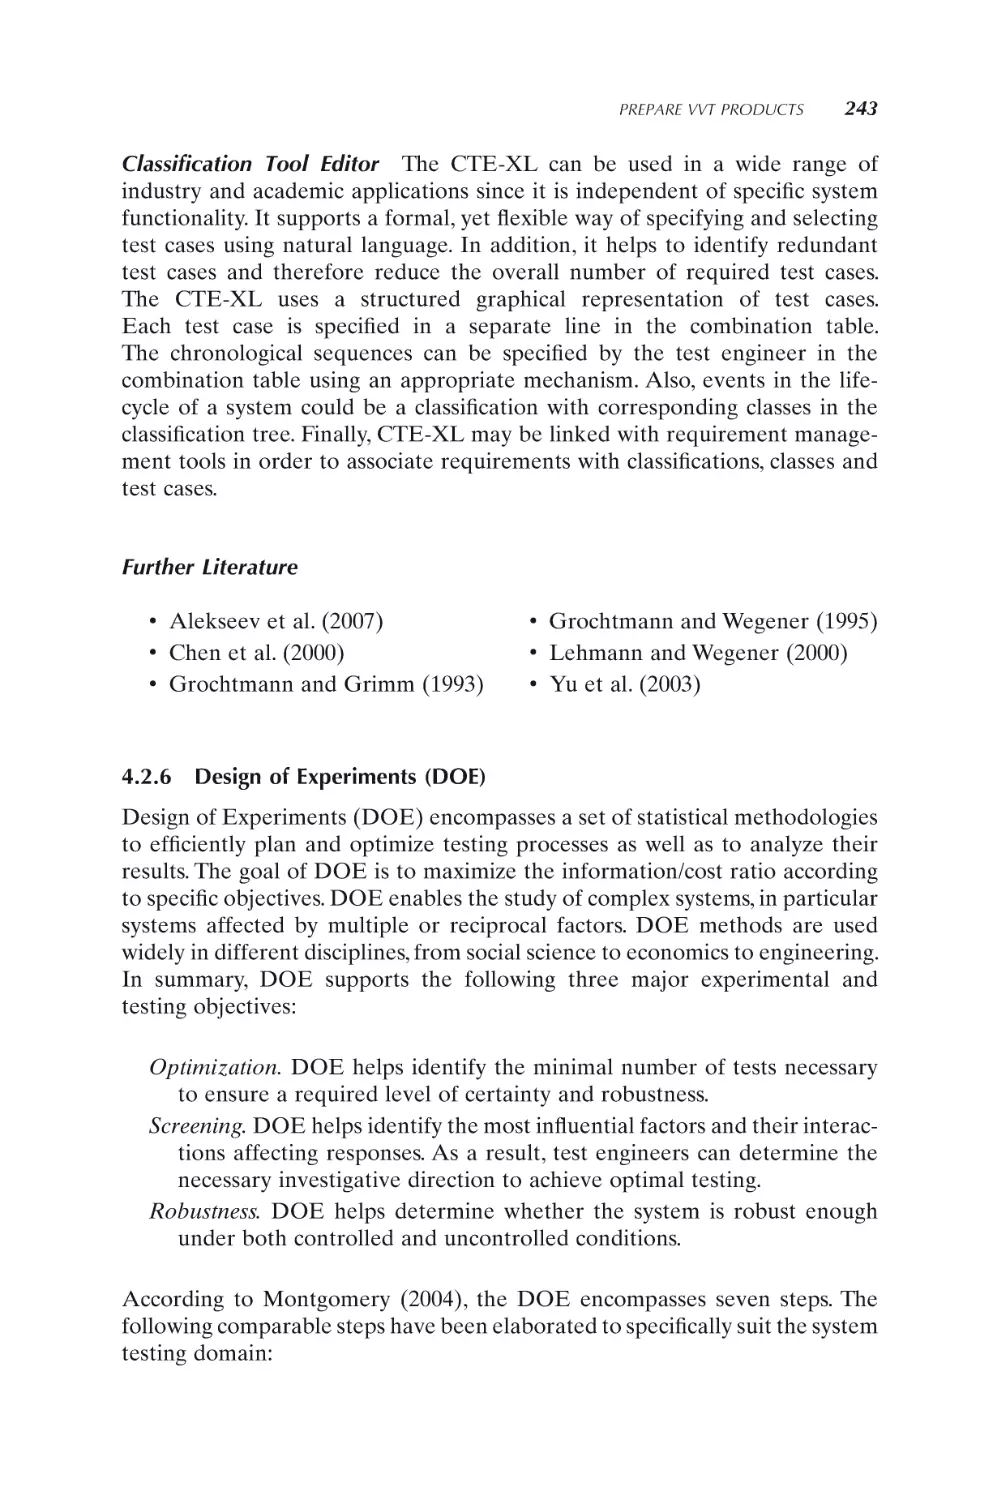 4.2.6 Design of Experiments (DOE)